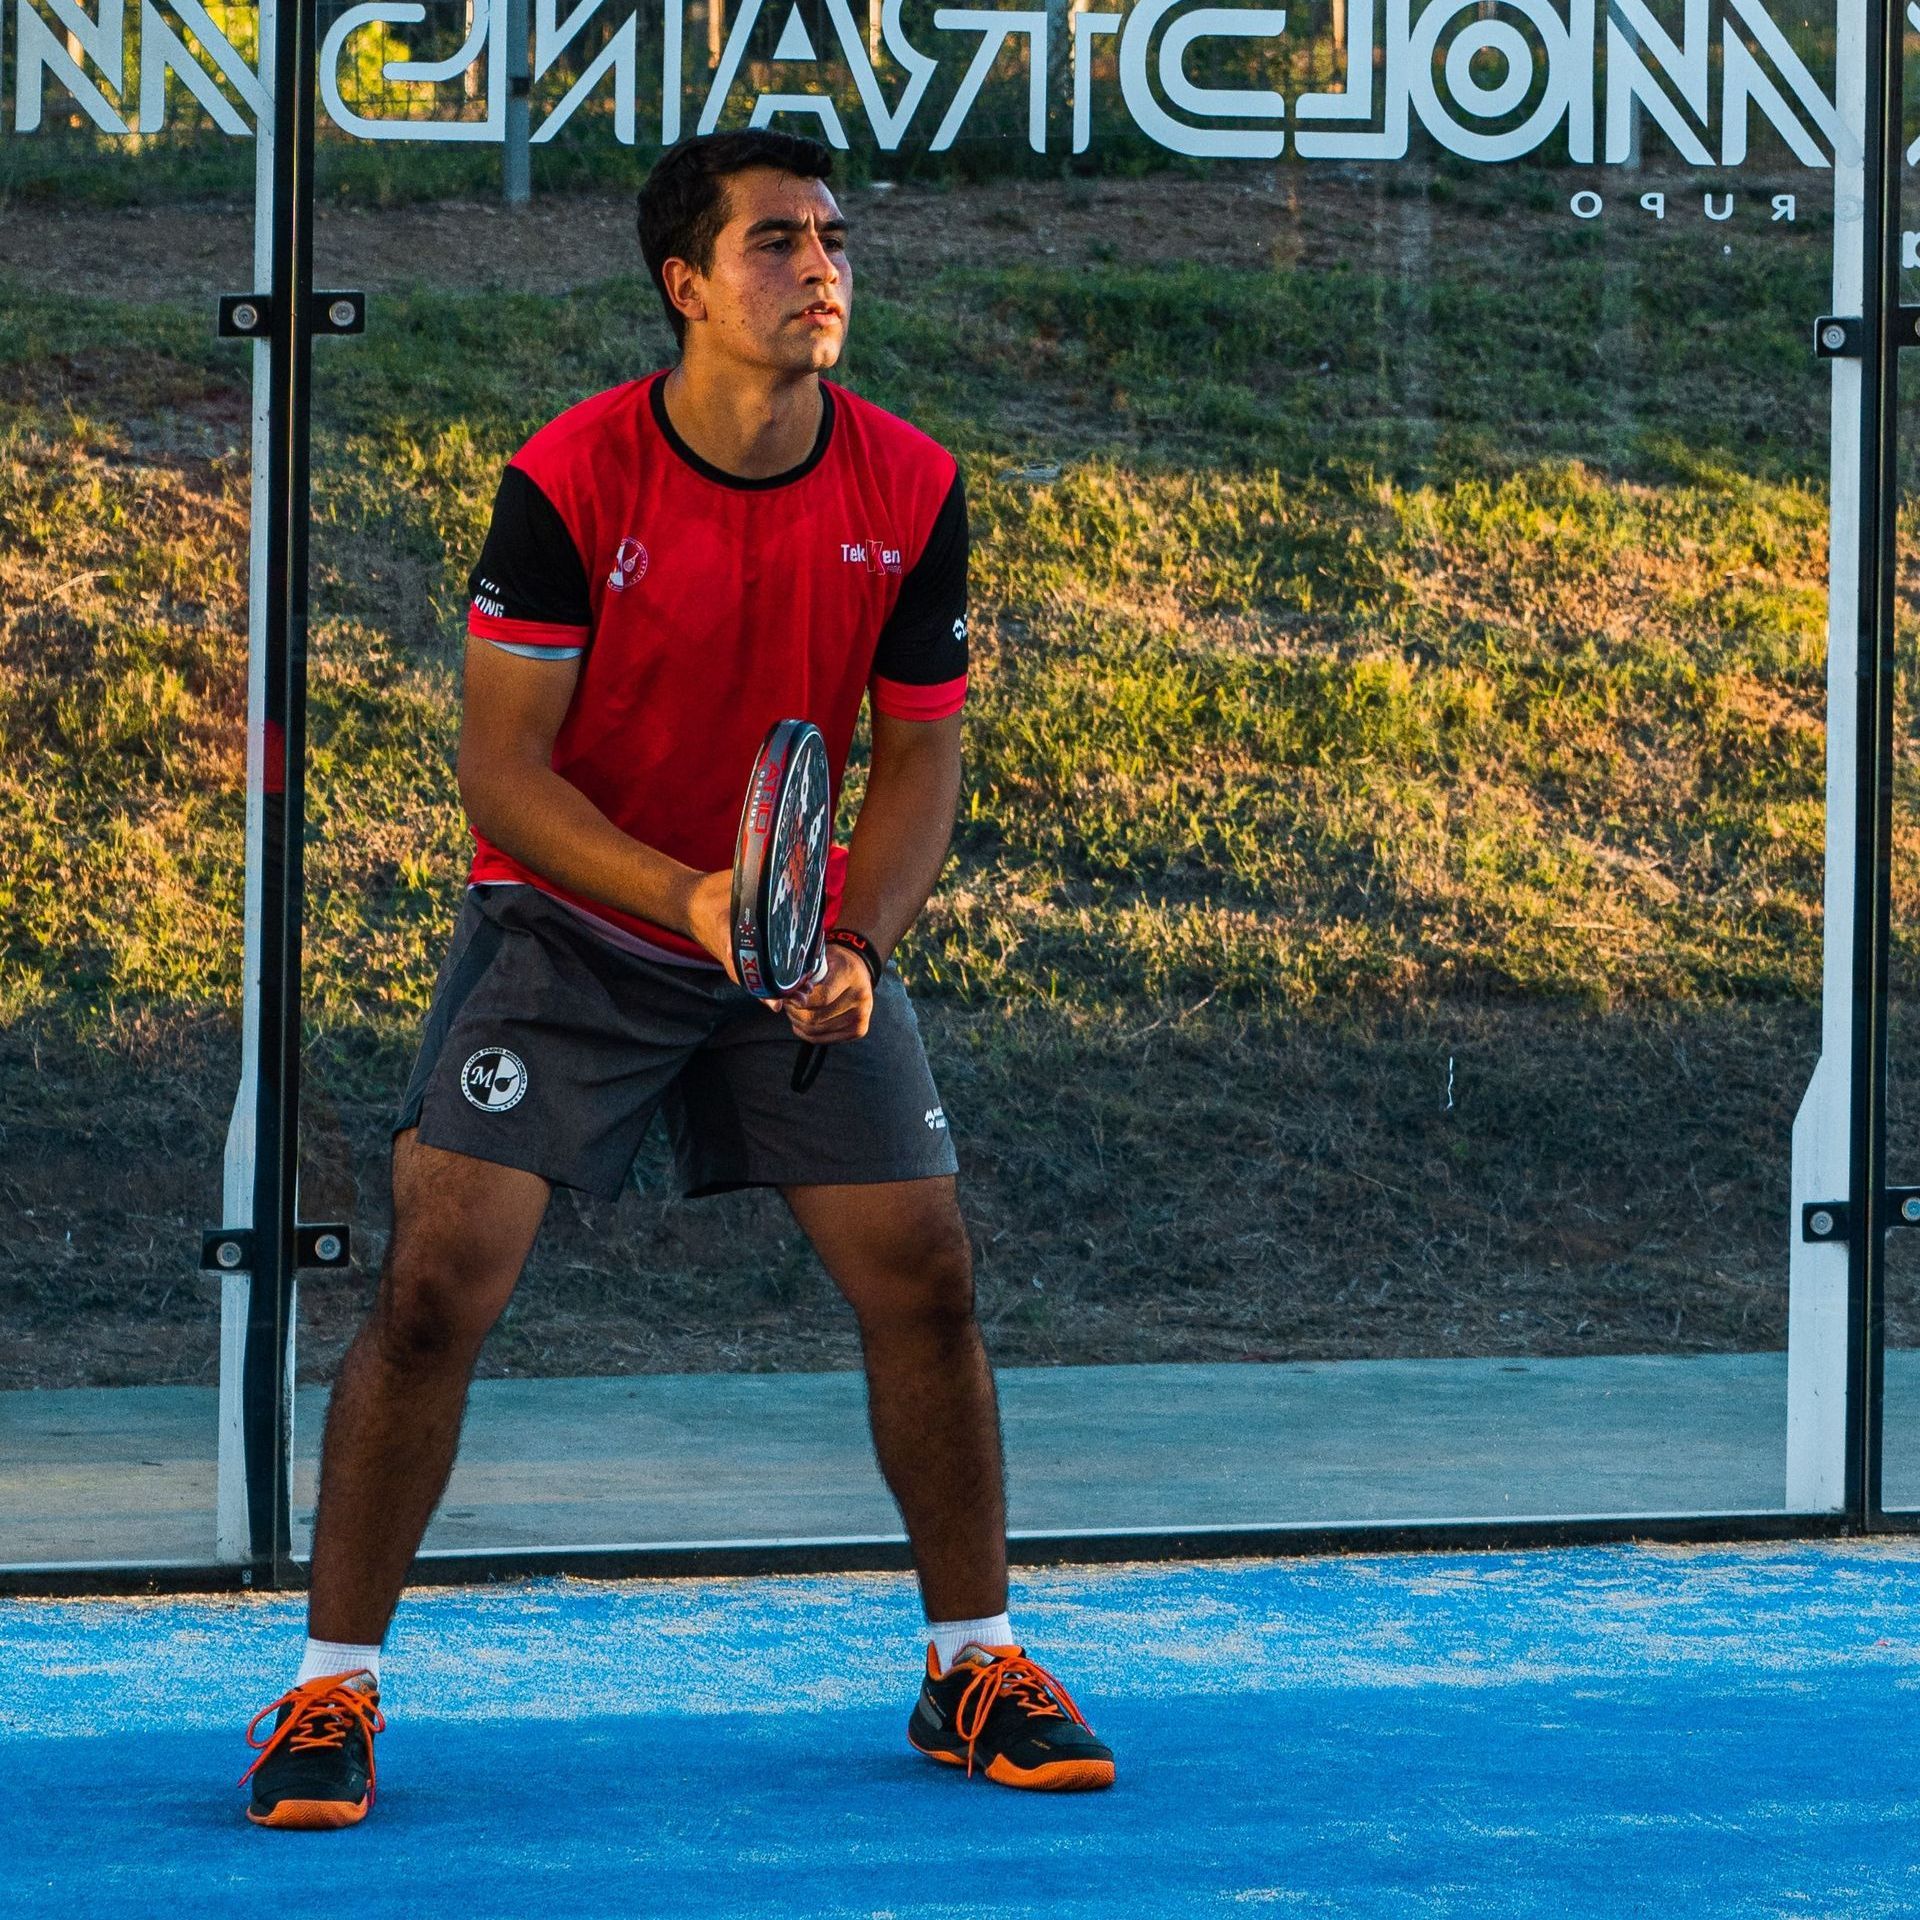 Een man in een rood shirt houdt een tennisracket vast